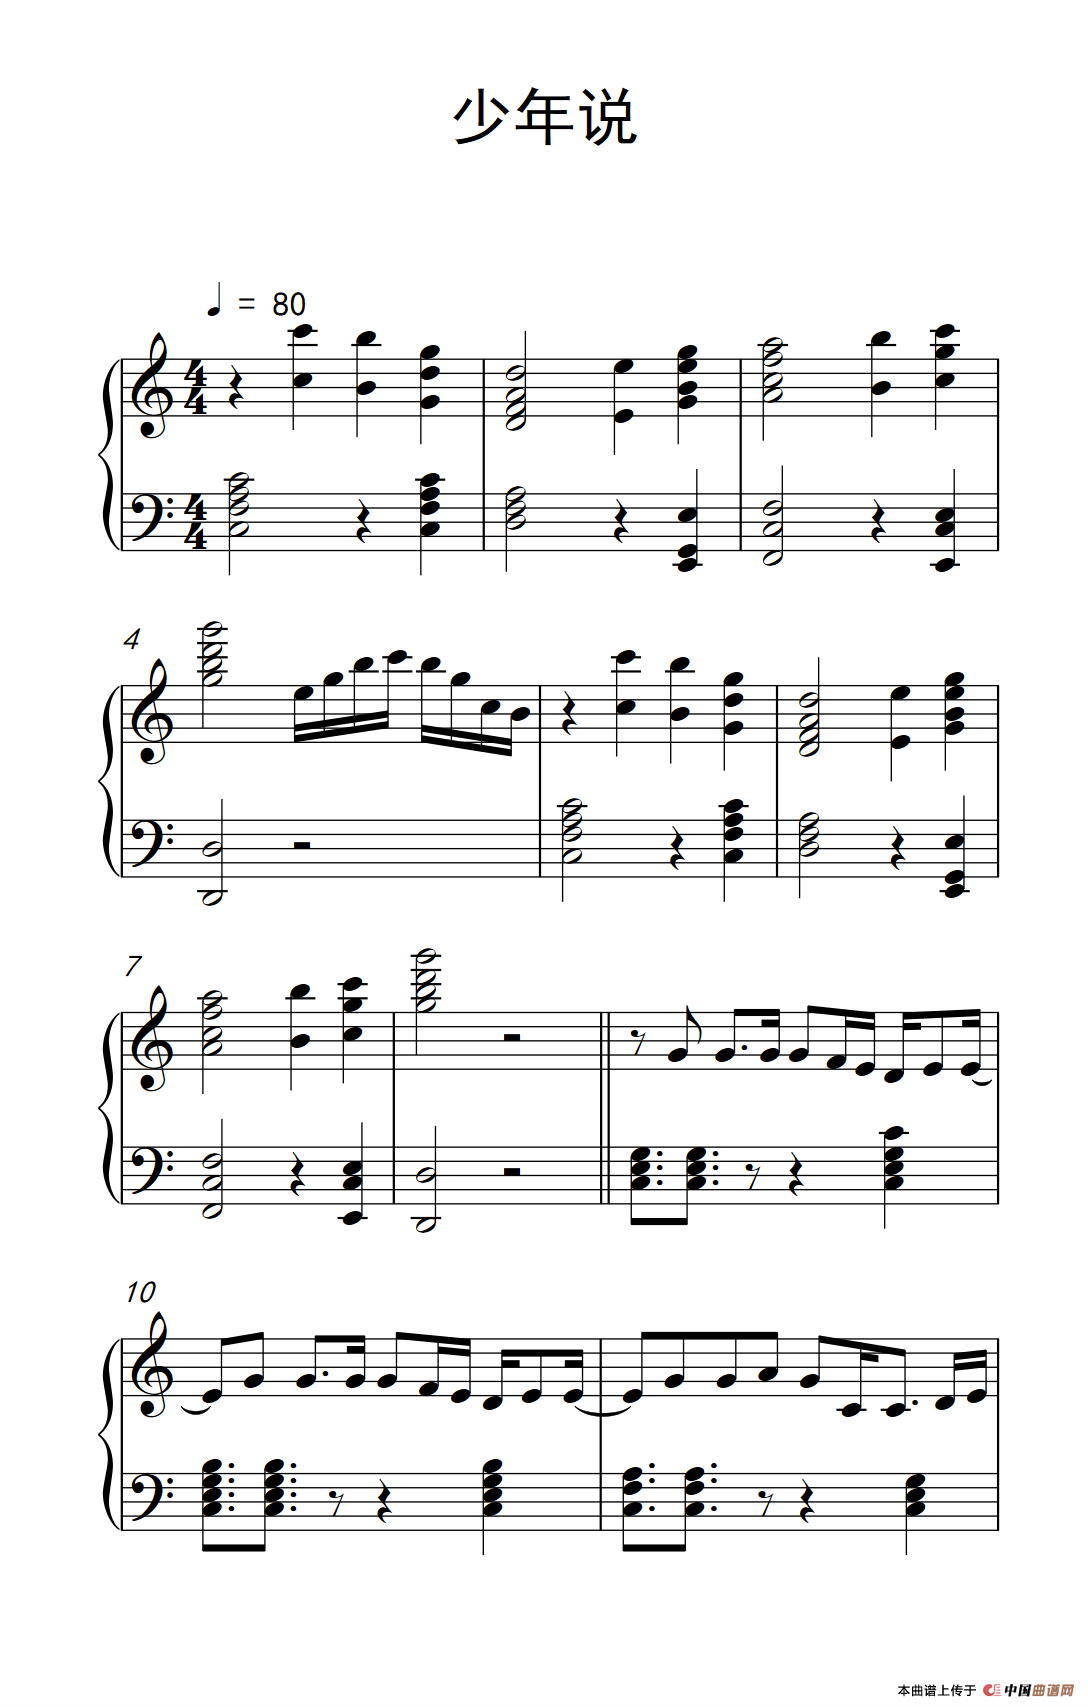 《少年说》钢琴曲谱图分享